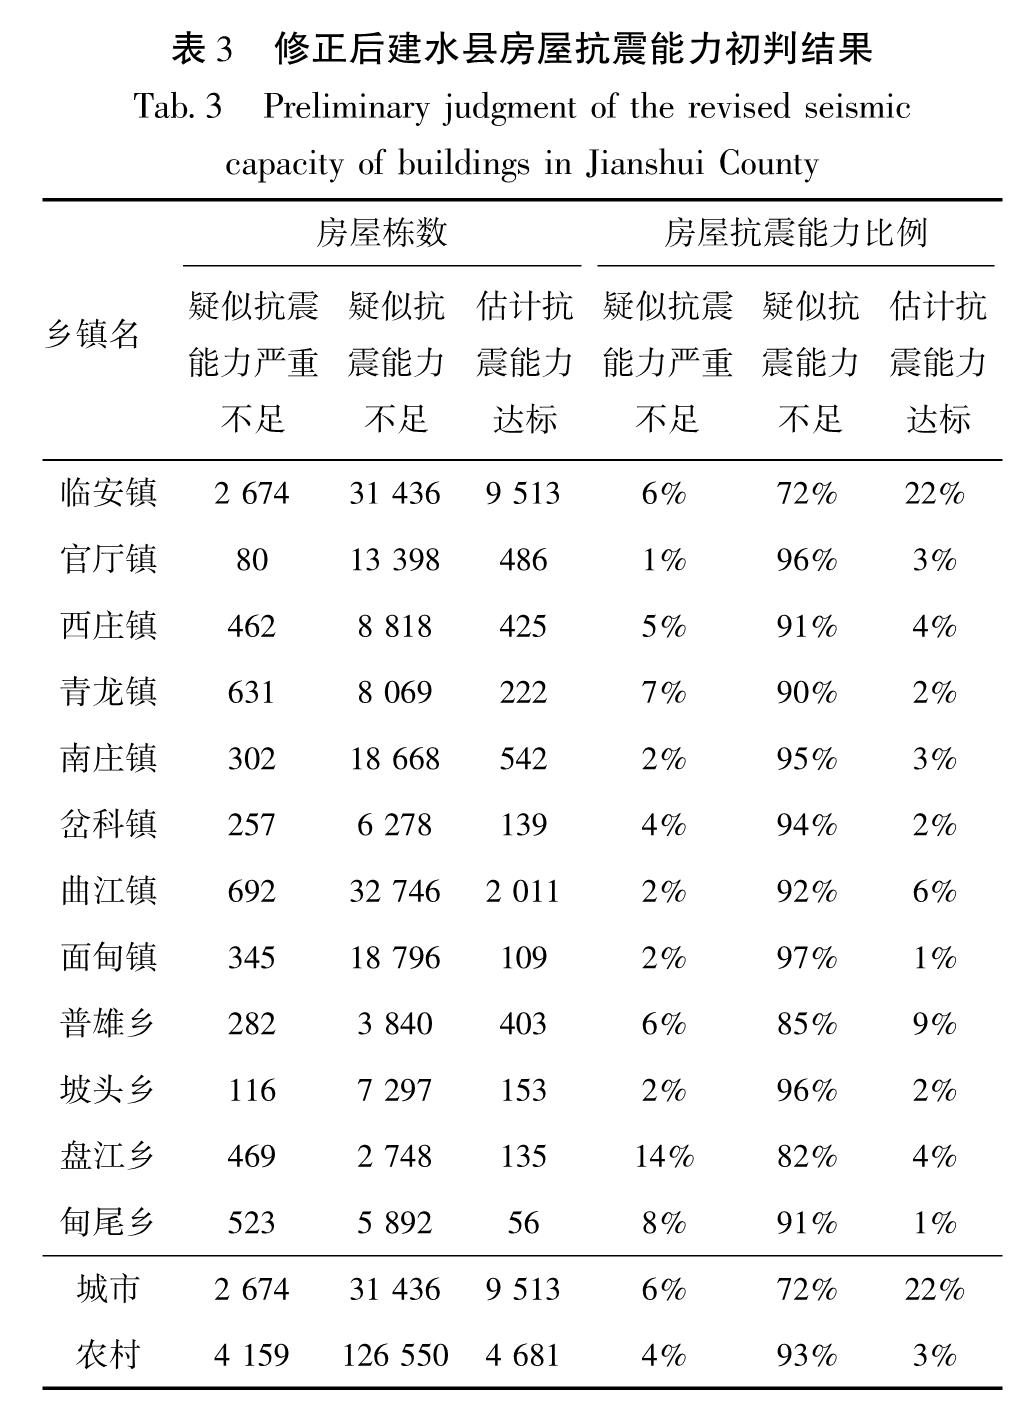 表3 修正后建水县房屋抗震能力初判结果<br/>Tab.3 Preliminary judgment of the revised seismic capacity of buildings in Jianshui County